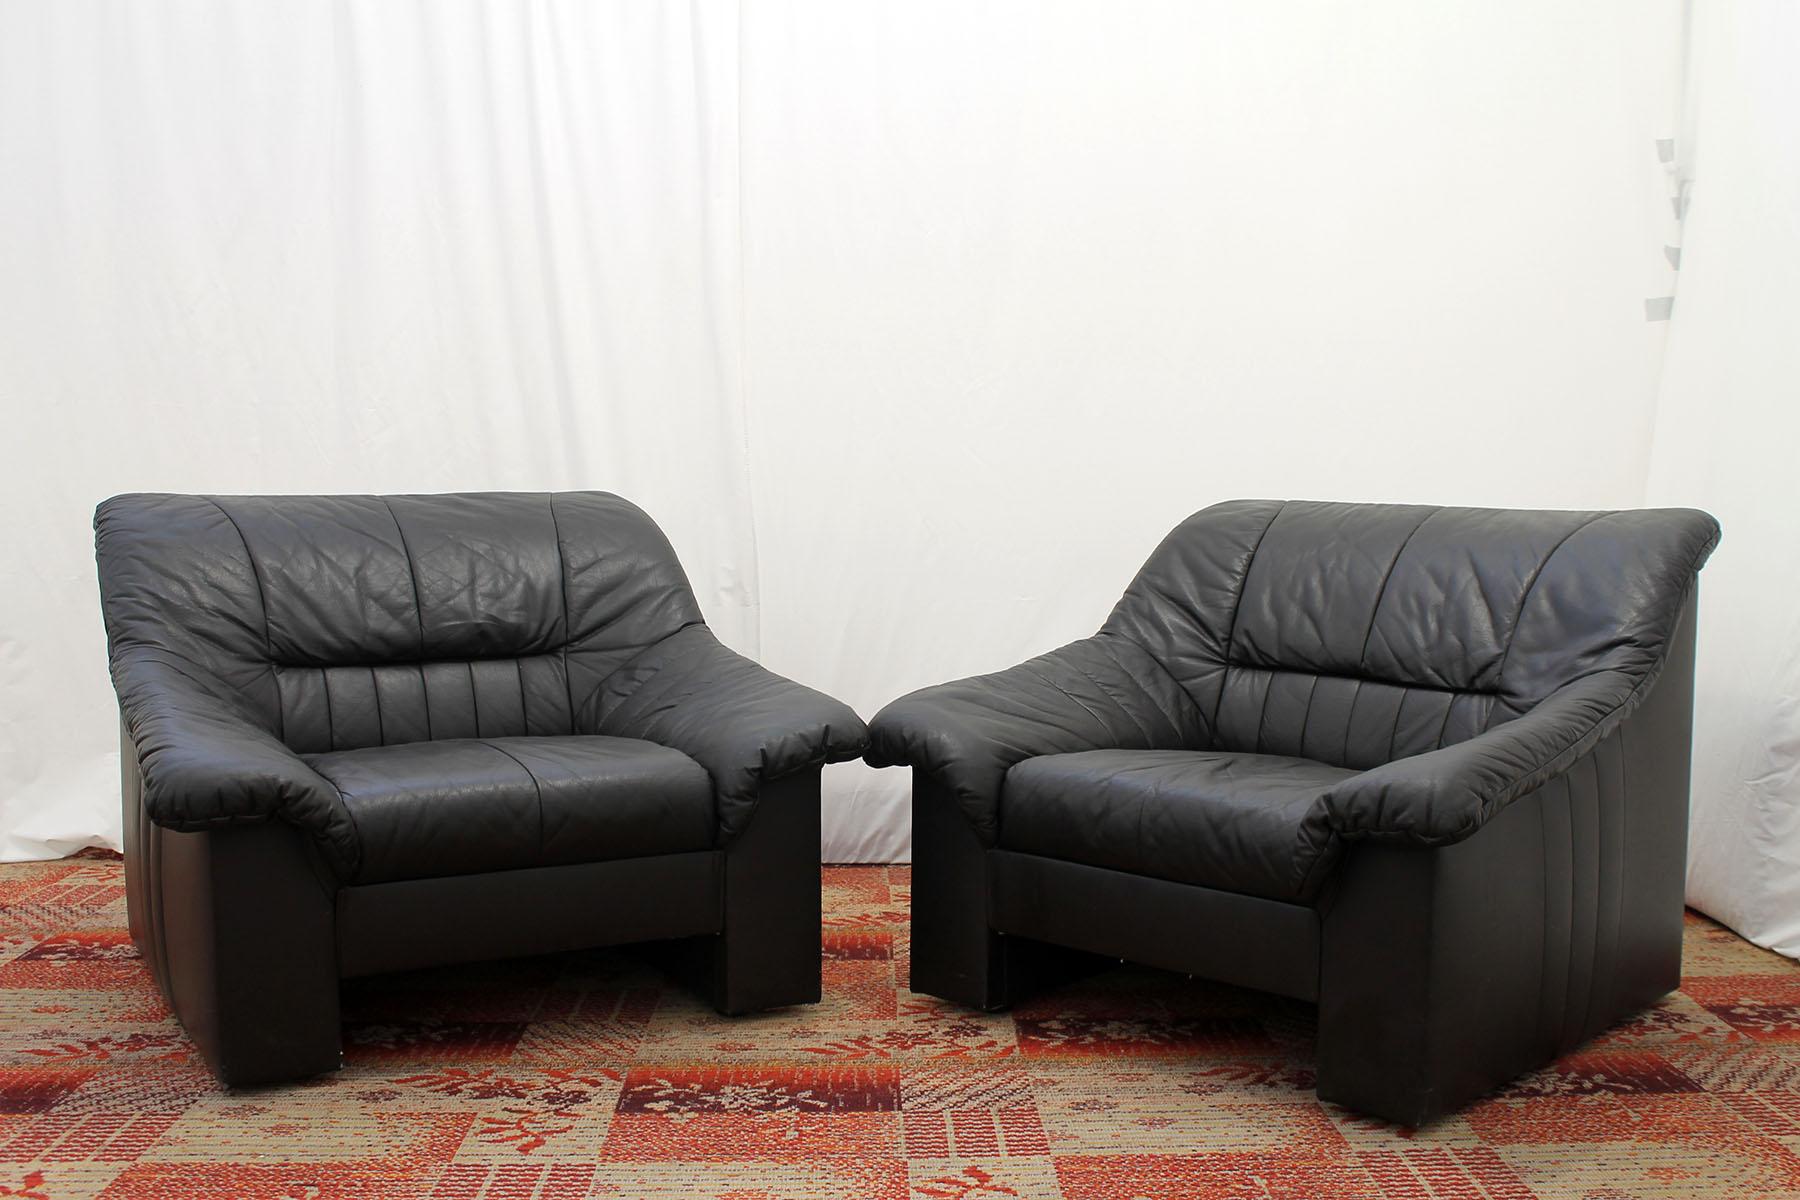 Diese bequemen Ledersessel wurden in den 1980er Jahren in der ehemaligen Tschechoslowakei hergestellt.
Die Stühle sind aus schwarzem Leder gefertigt.
Sie sind in gutem Vintage-Zustand ohne Schäden.
Der Preis gilt für das Paar.

 Abmessungen der